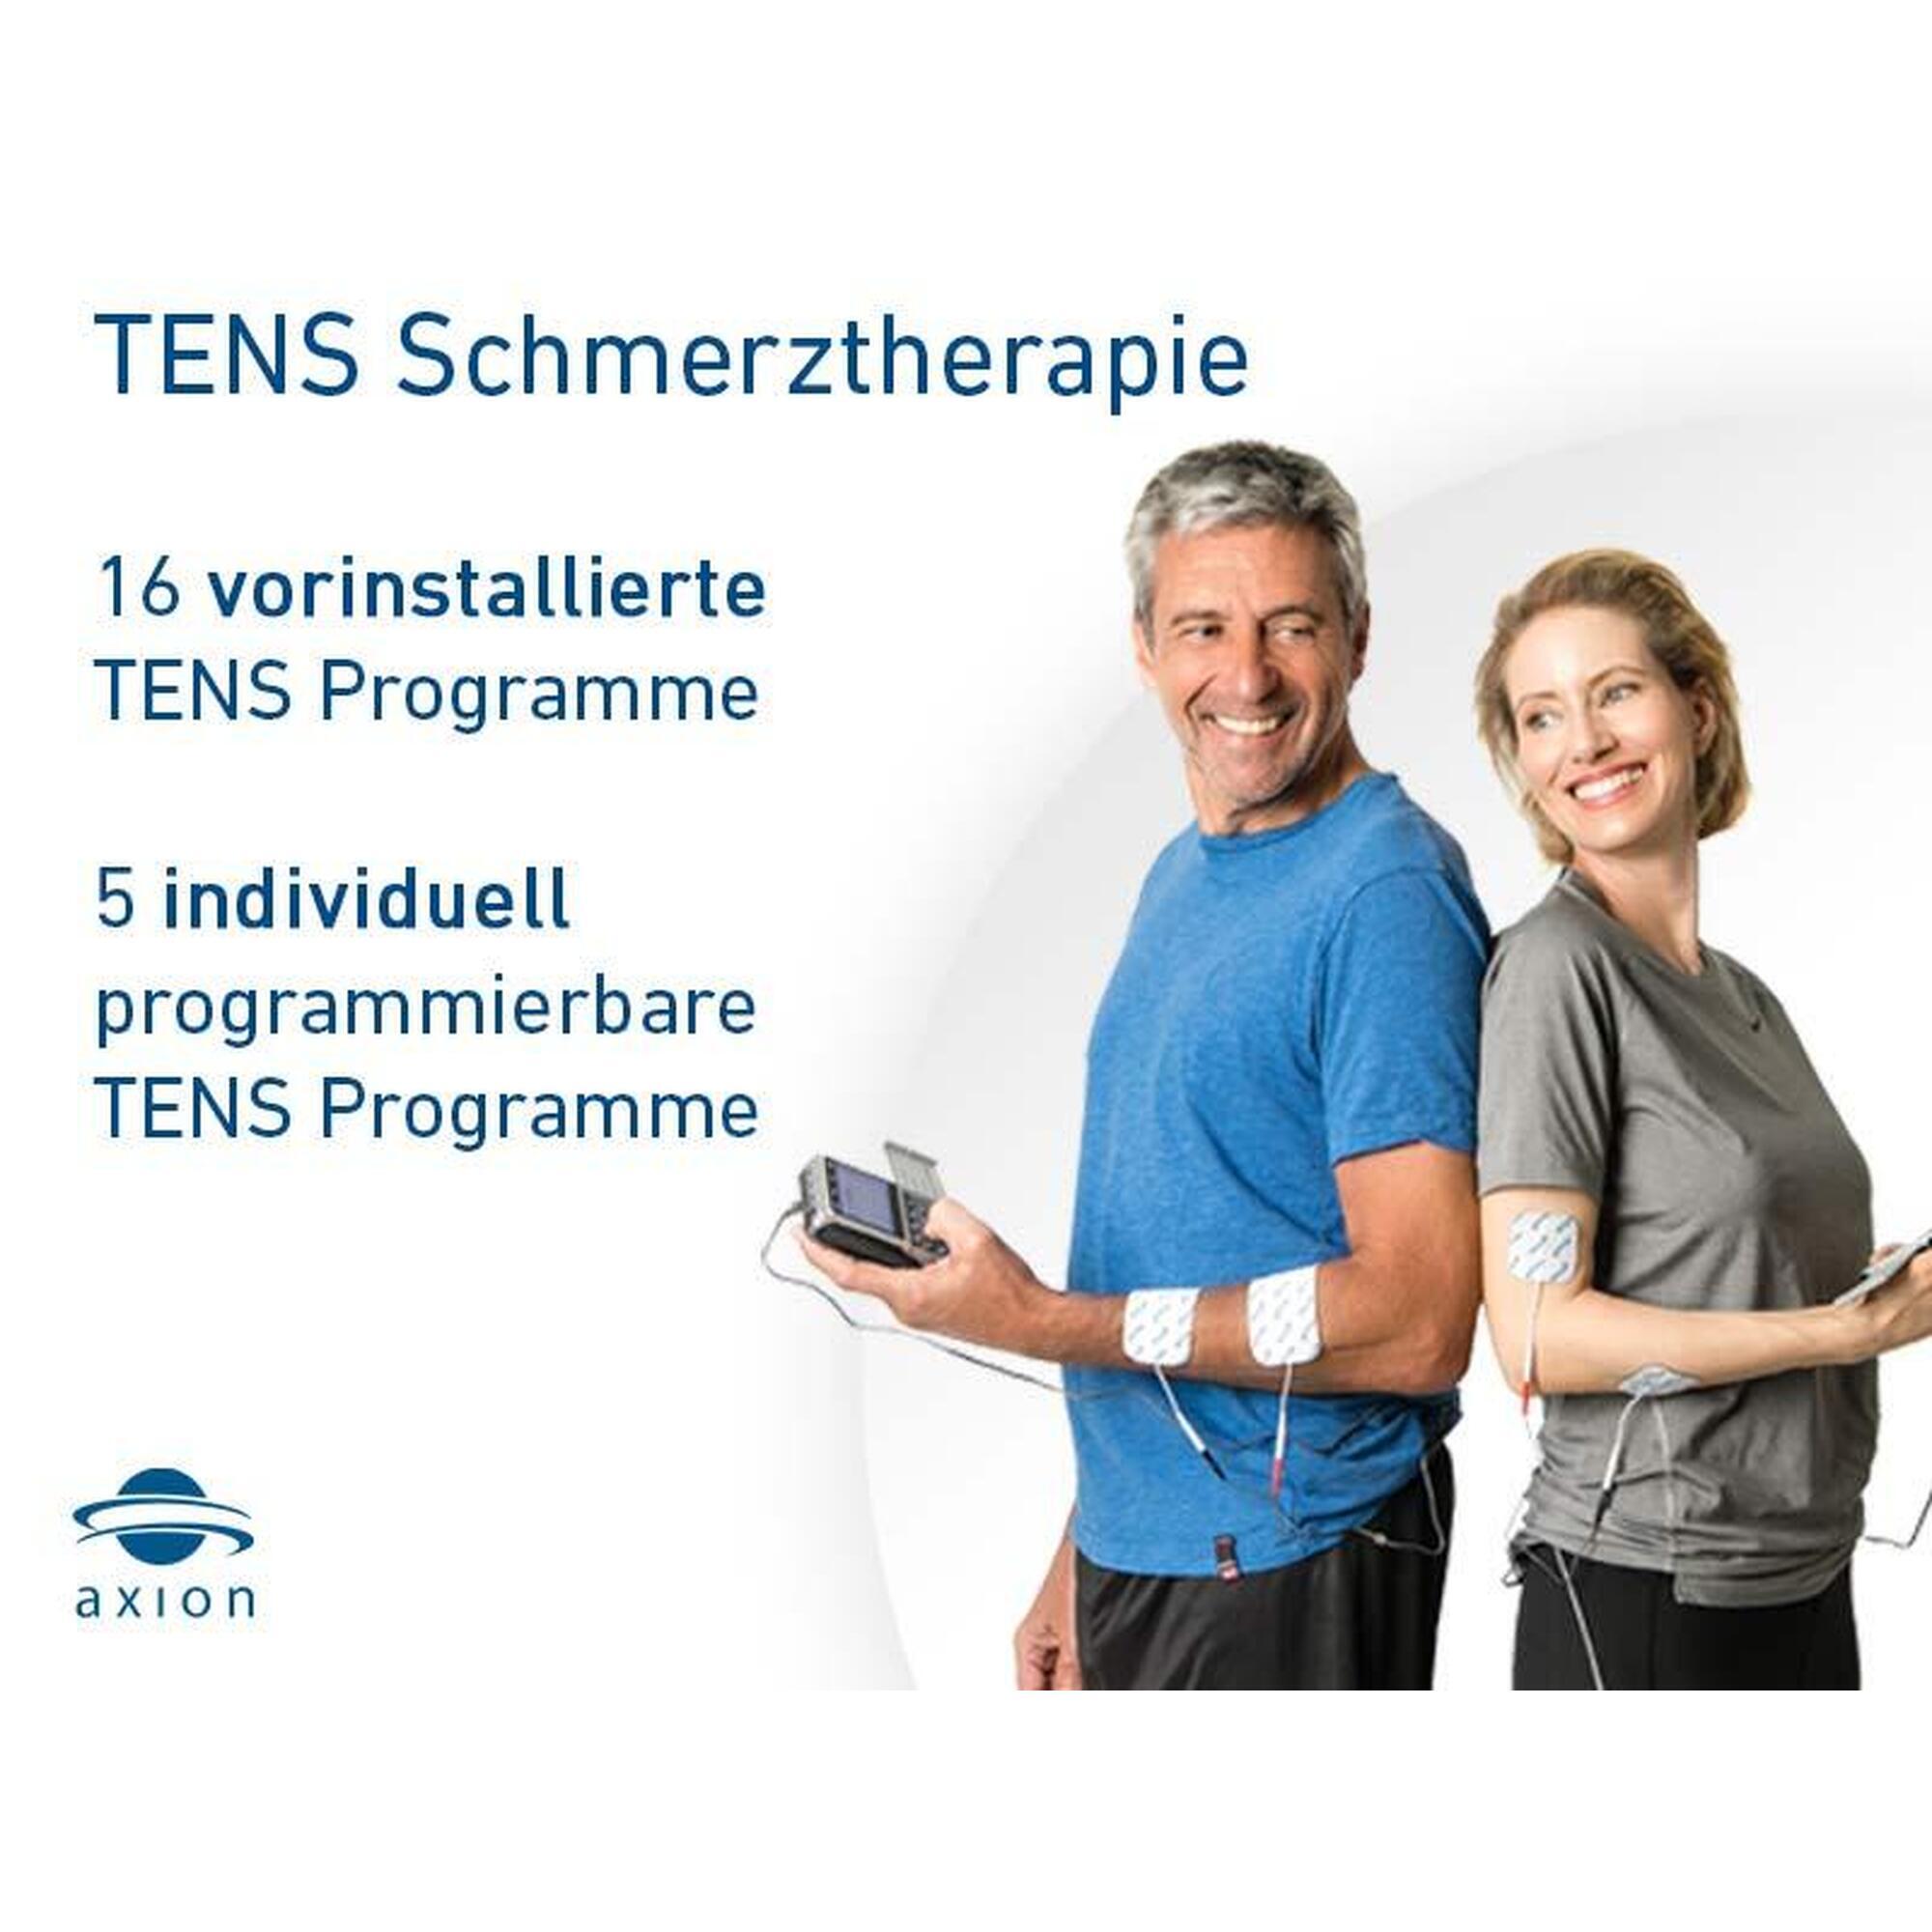 Estimulador de nervos e músculos-Aparelho combinado TENS-EMS 4 canais STIM-PRO